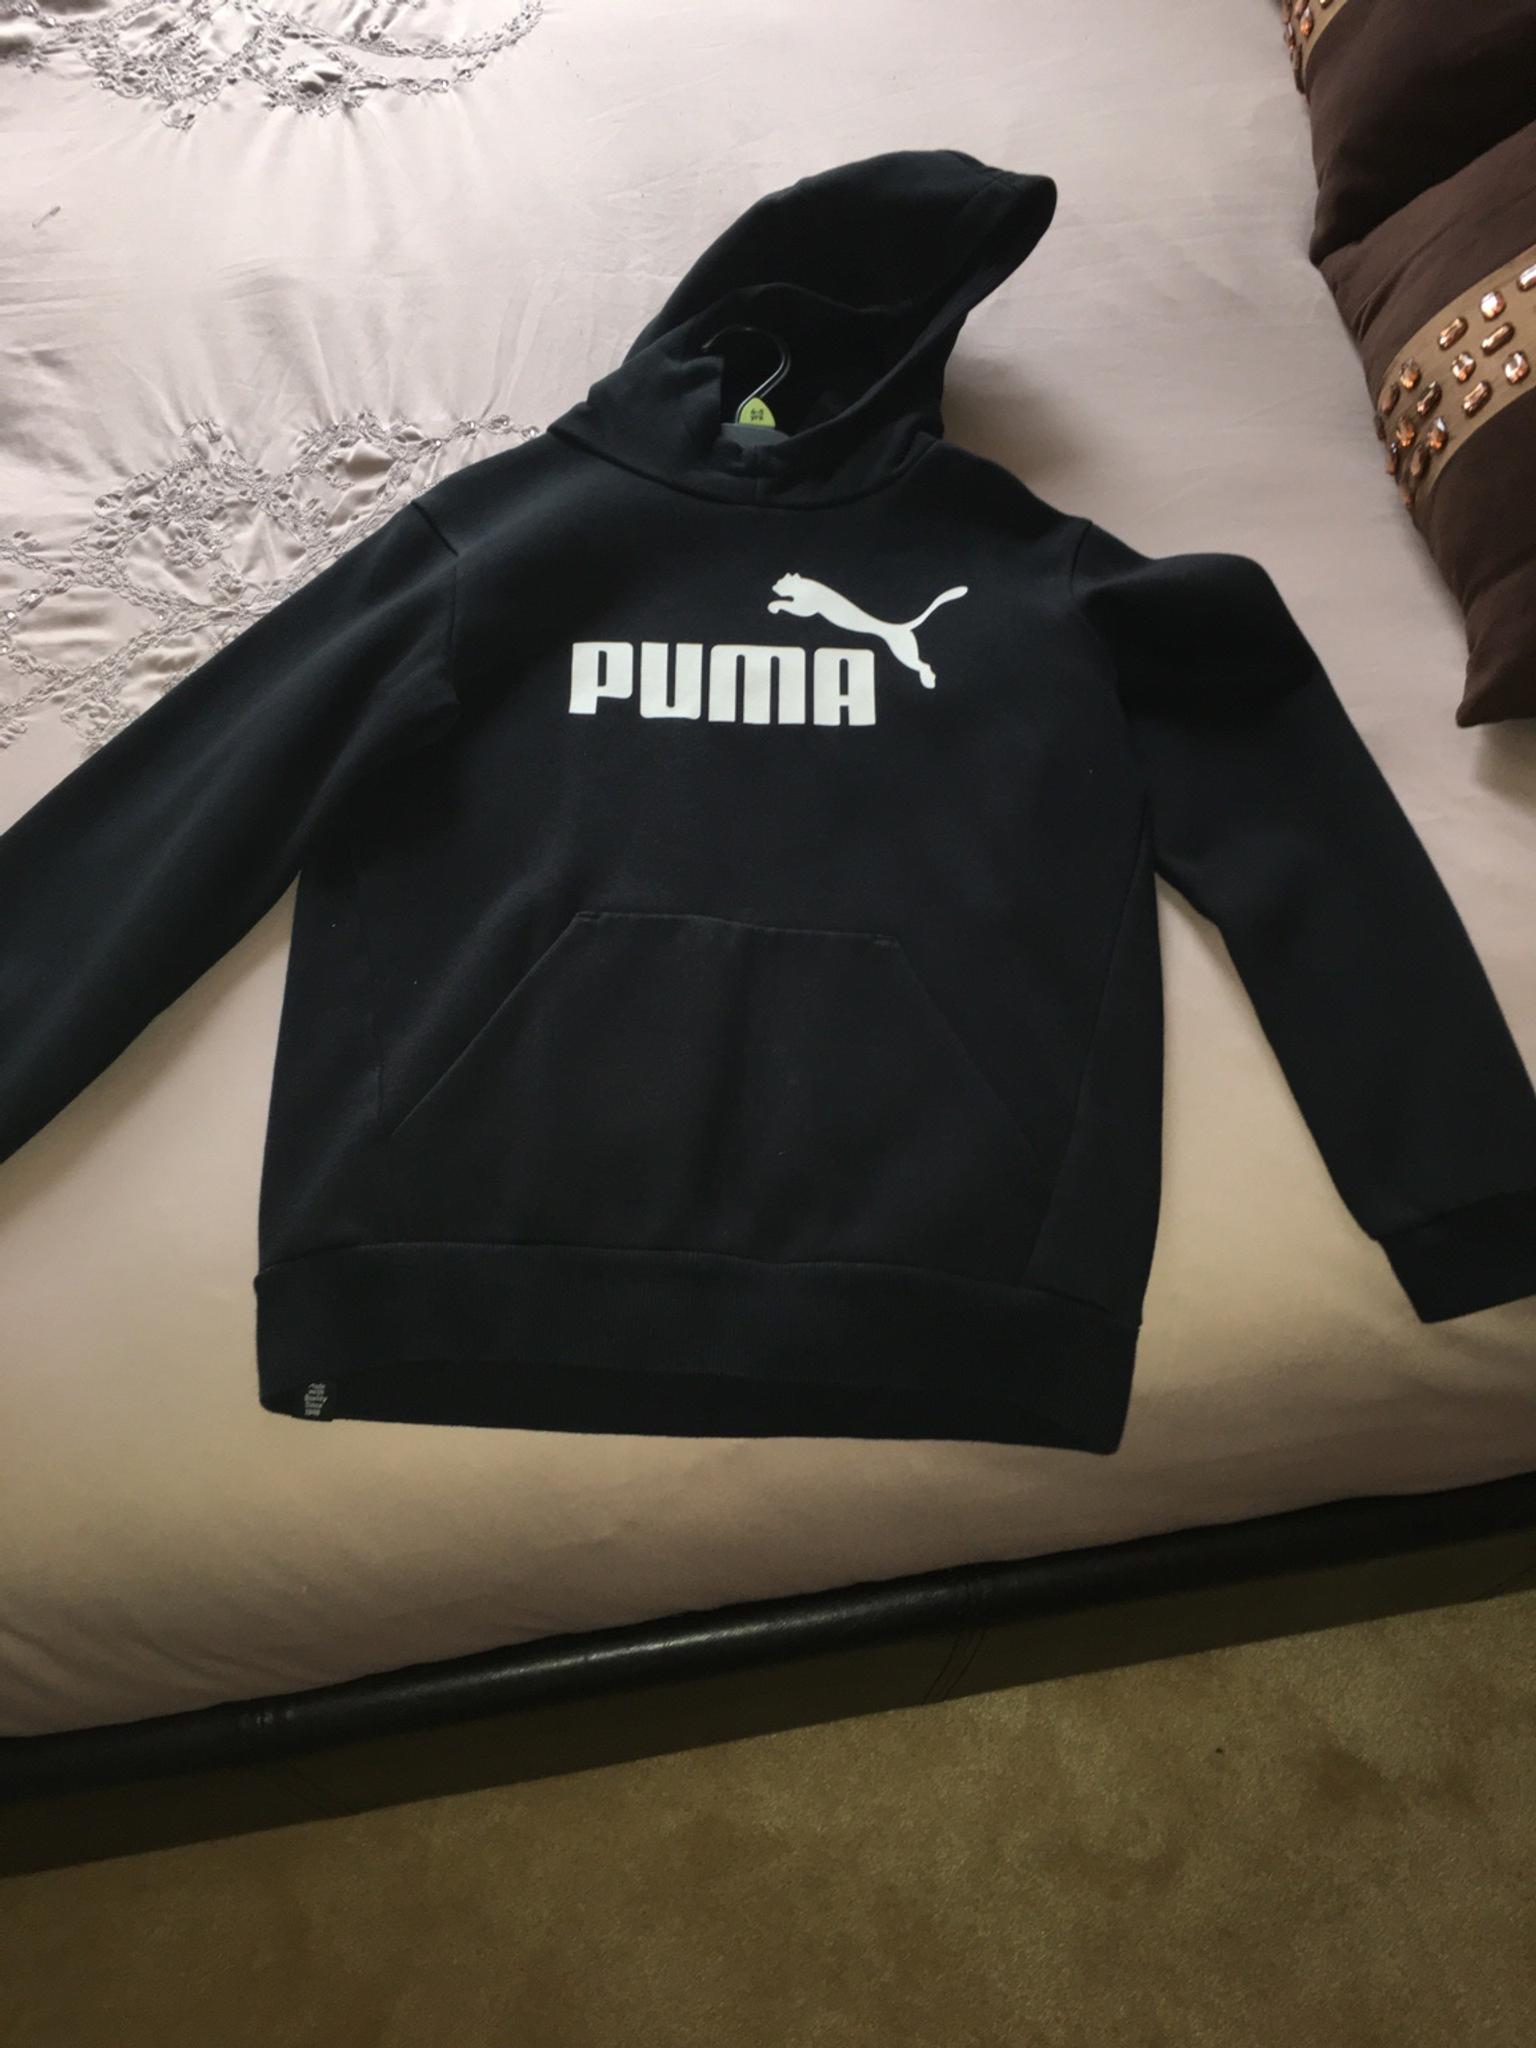 puma tracksuit hoodie